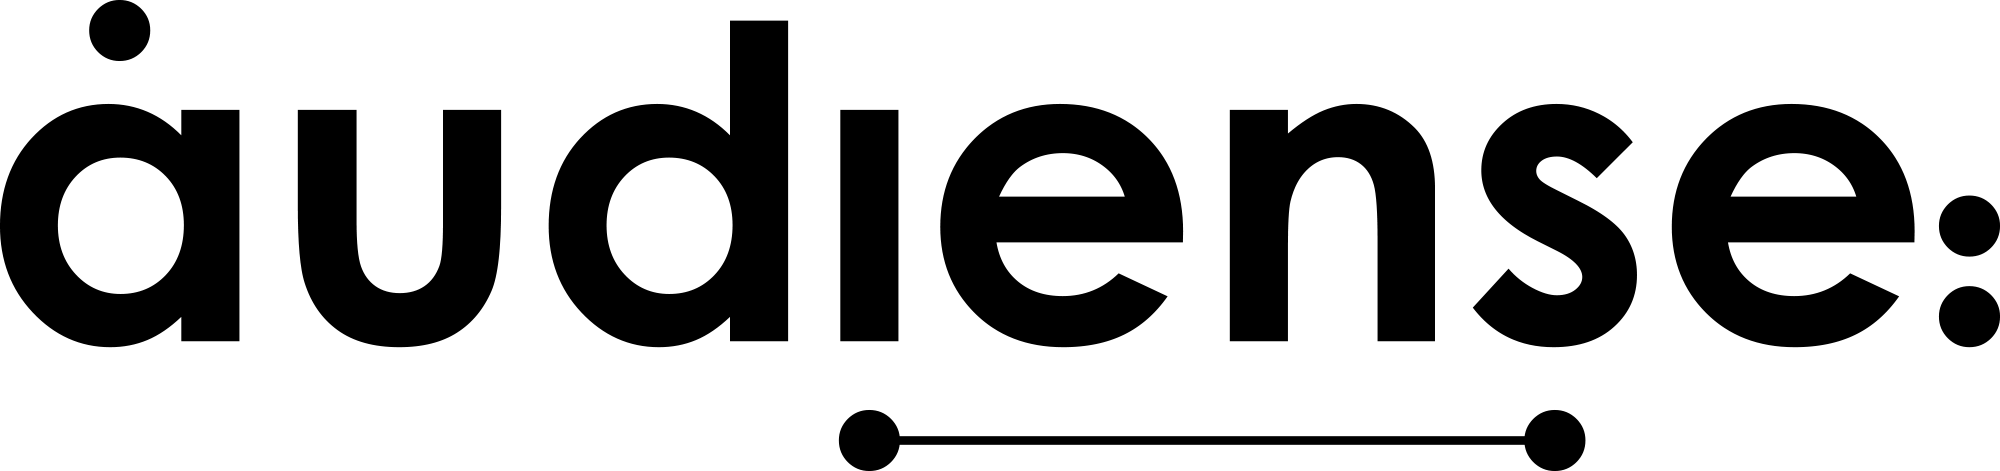 Audiense Logotype